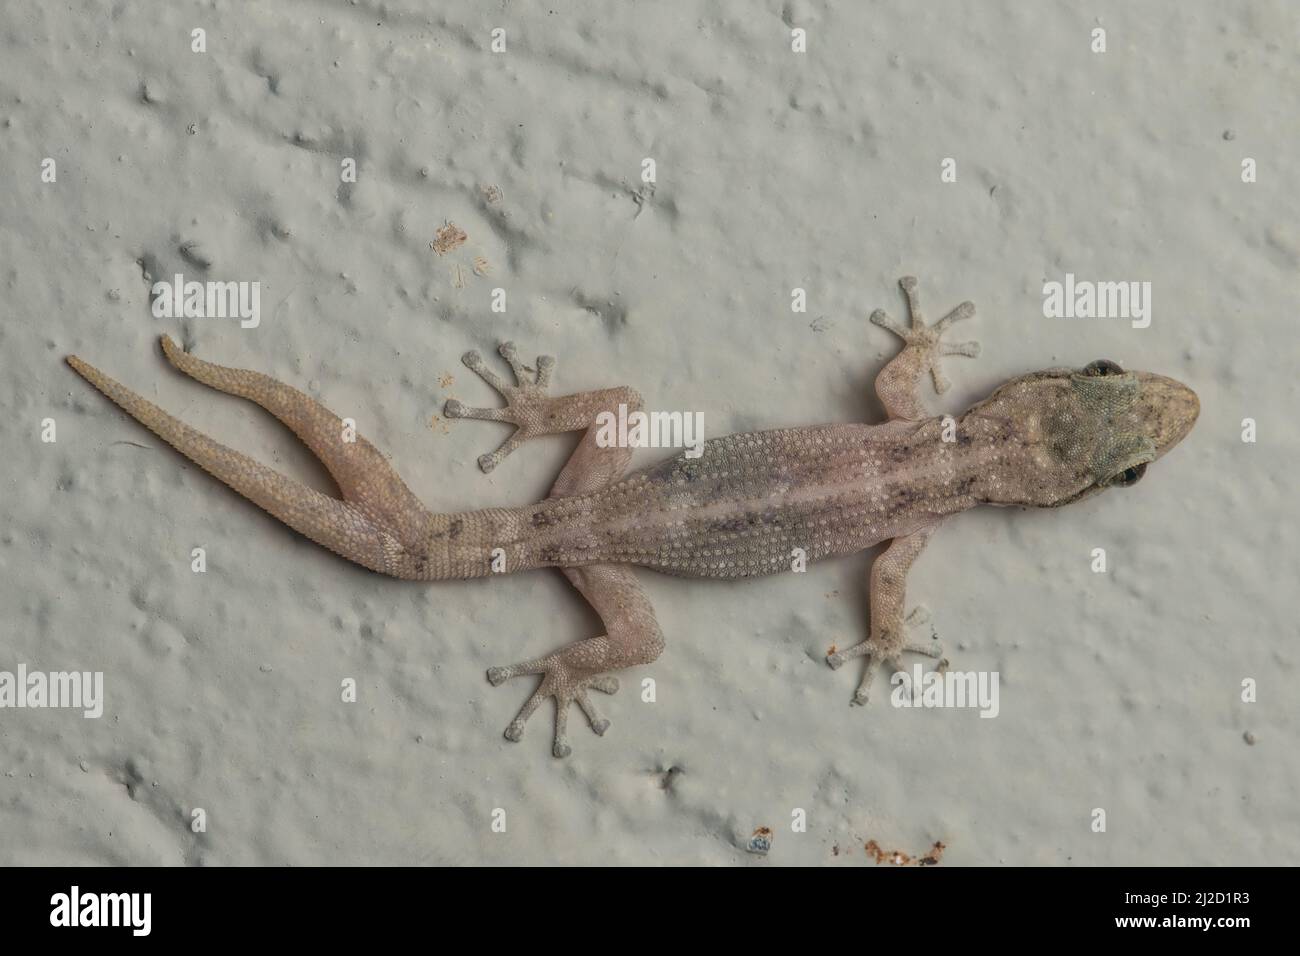 Un gecko côtier à embout de feuille (Phyllodactylus reissii) en Équateur avec une régénération anormale de la queue où la queue s'est fendue, ce qui a entraîné une queue fourche. Banque D'Images